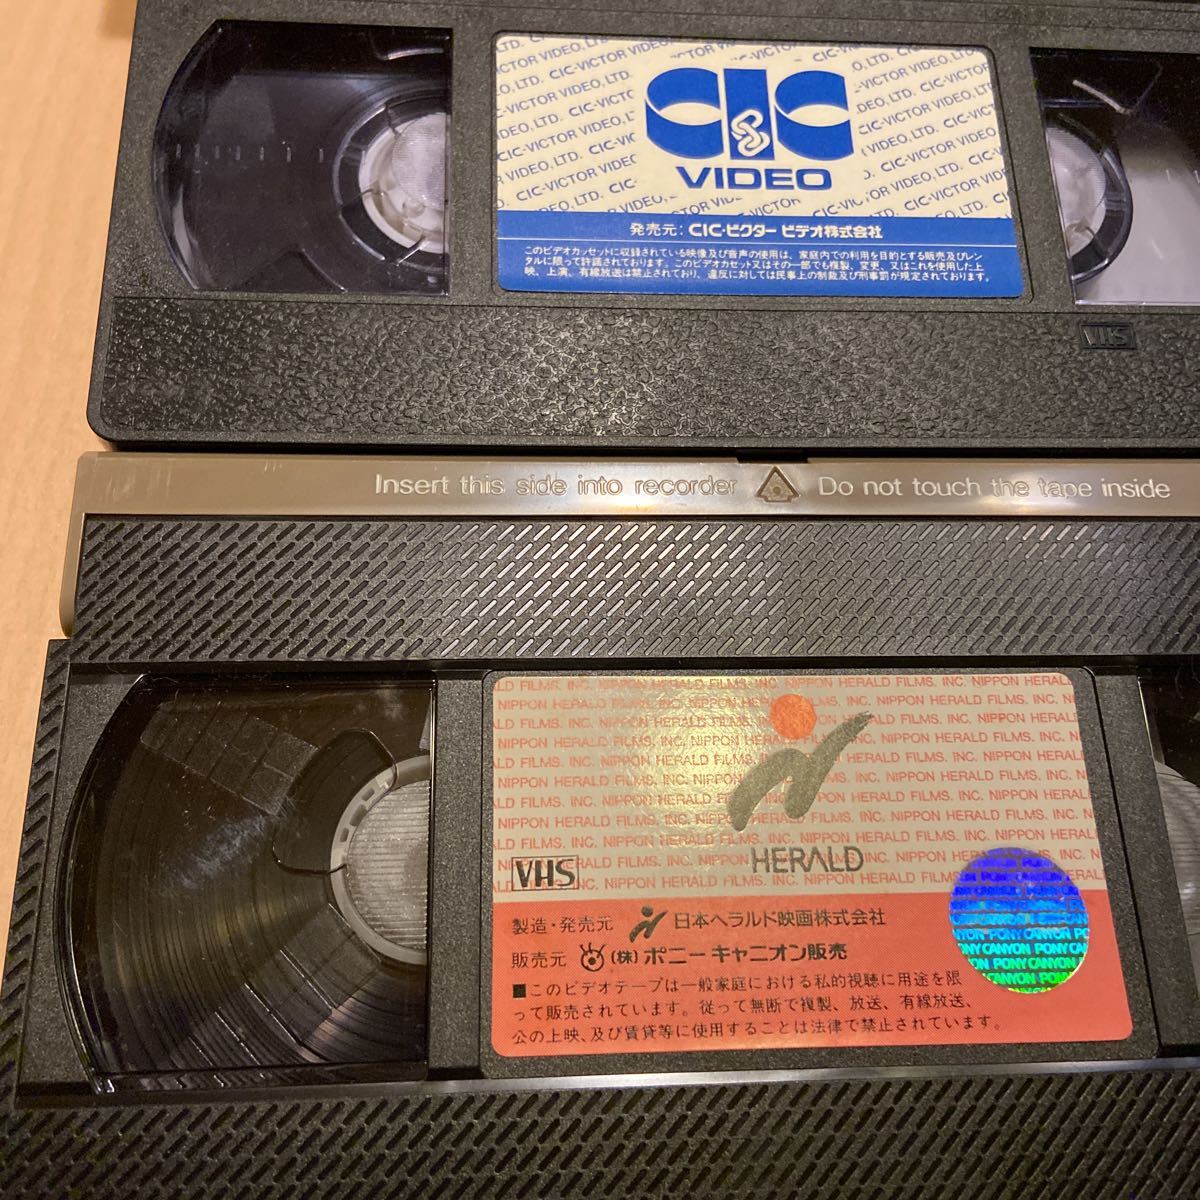 オードリー・ヘップバーン映画VHSビデオ6本まとめて、暗くなるまで待って、ローマの休日、昼下がりの情事、マイフェアレディ、ティファニーの画像9